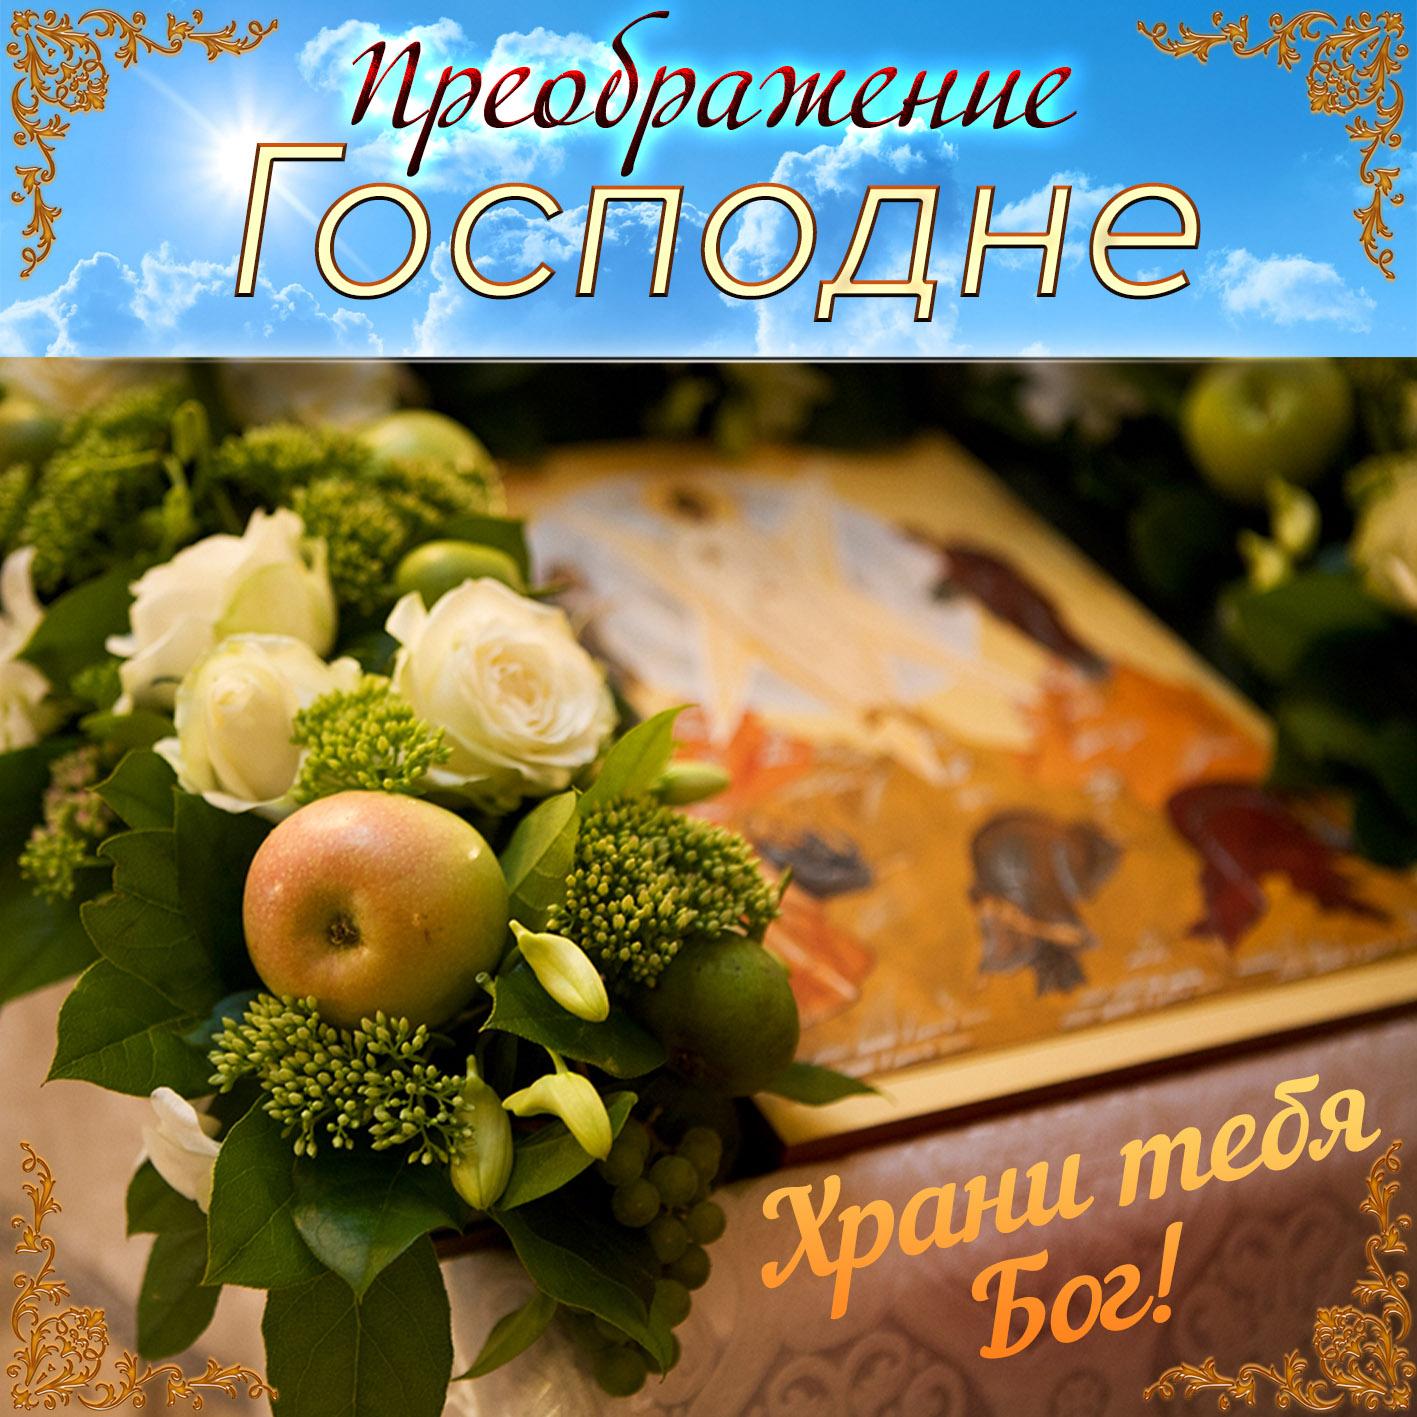 Фото Преображение Господне 19 августа 2022: лучшие новые открытки к празднику для православных 17